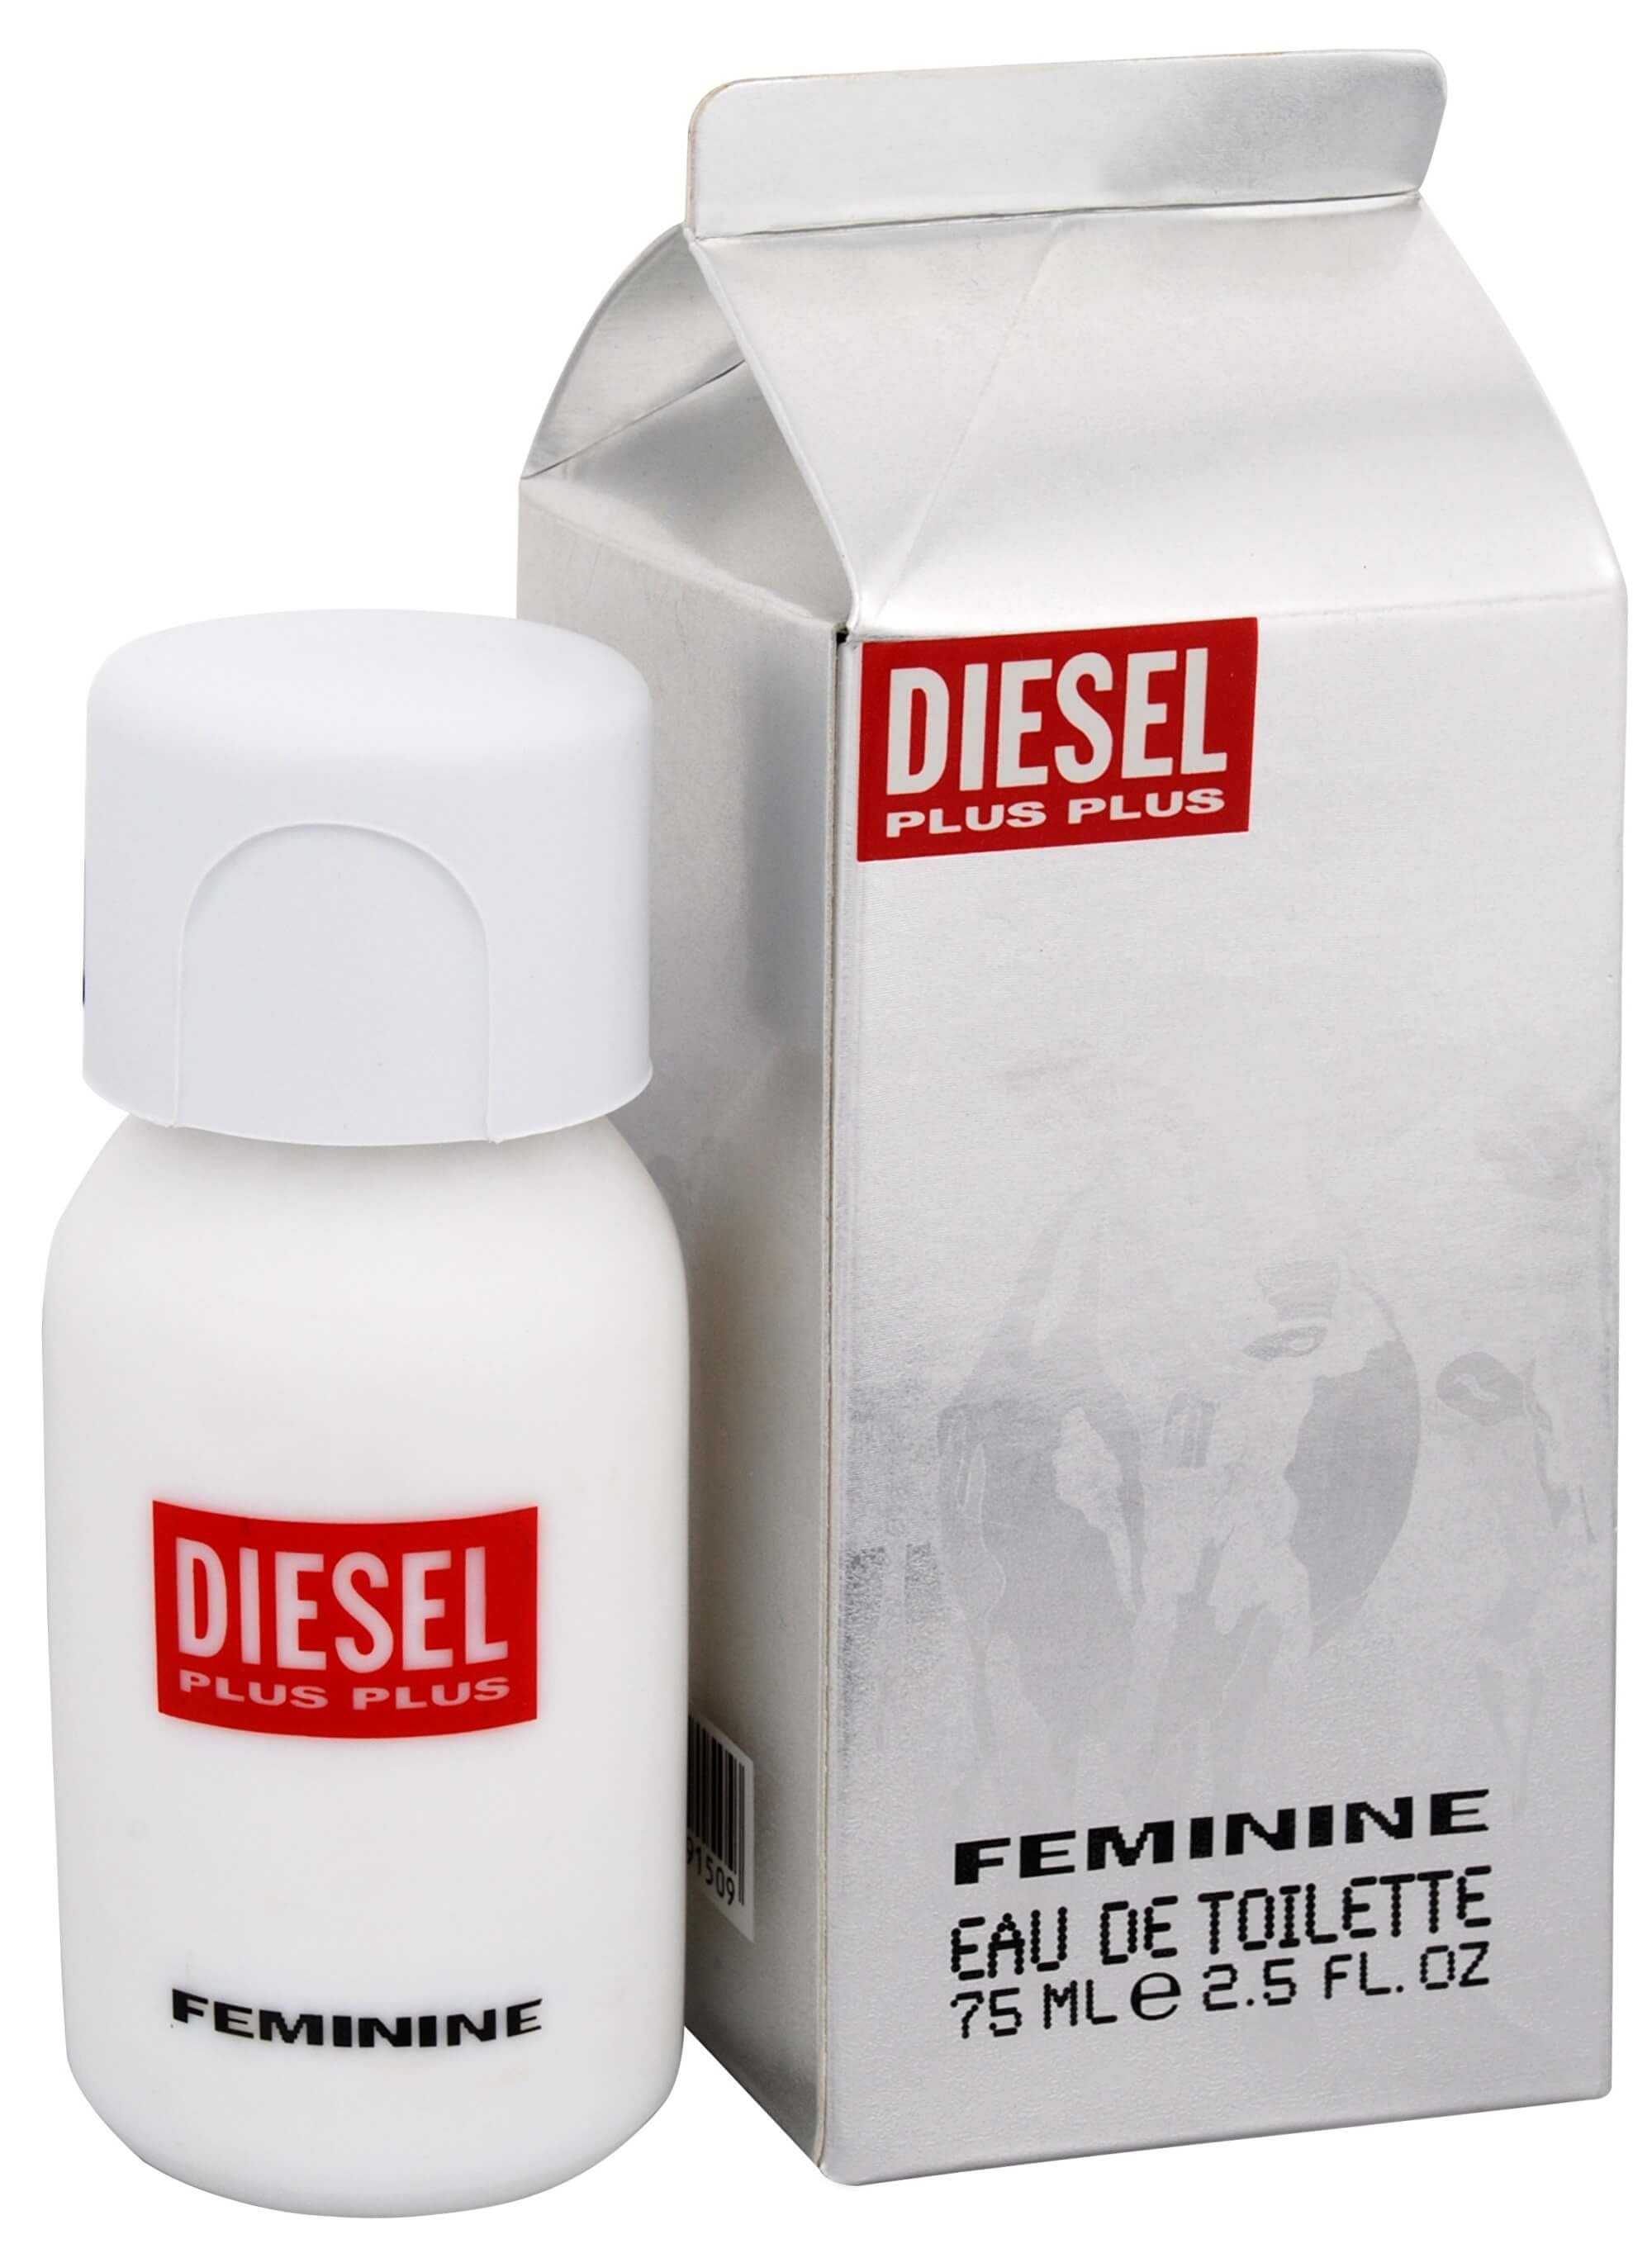 Diesel Plus Plus Feminine - EDT 1 ml - odstřik